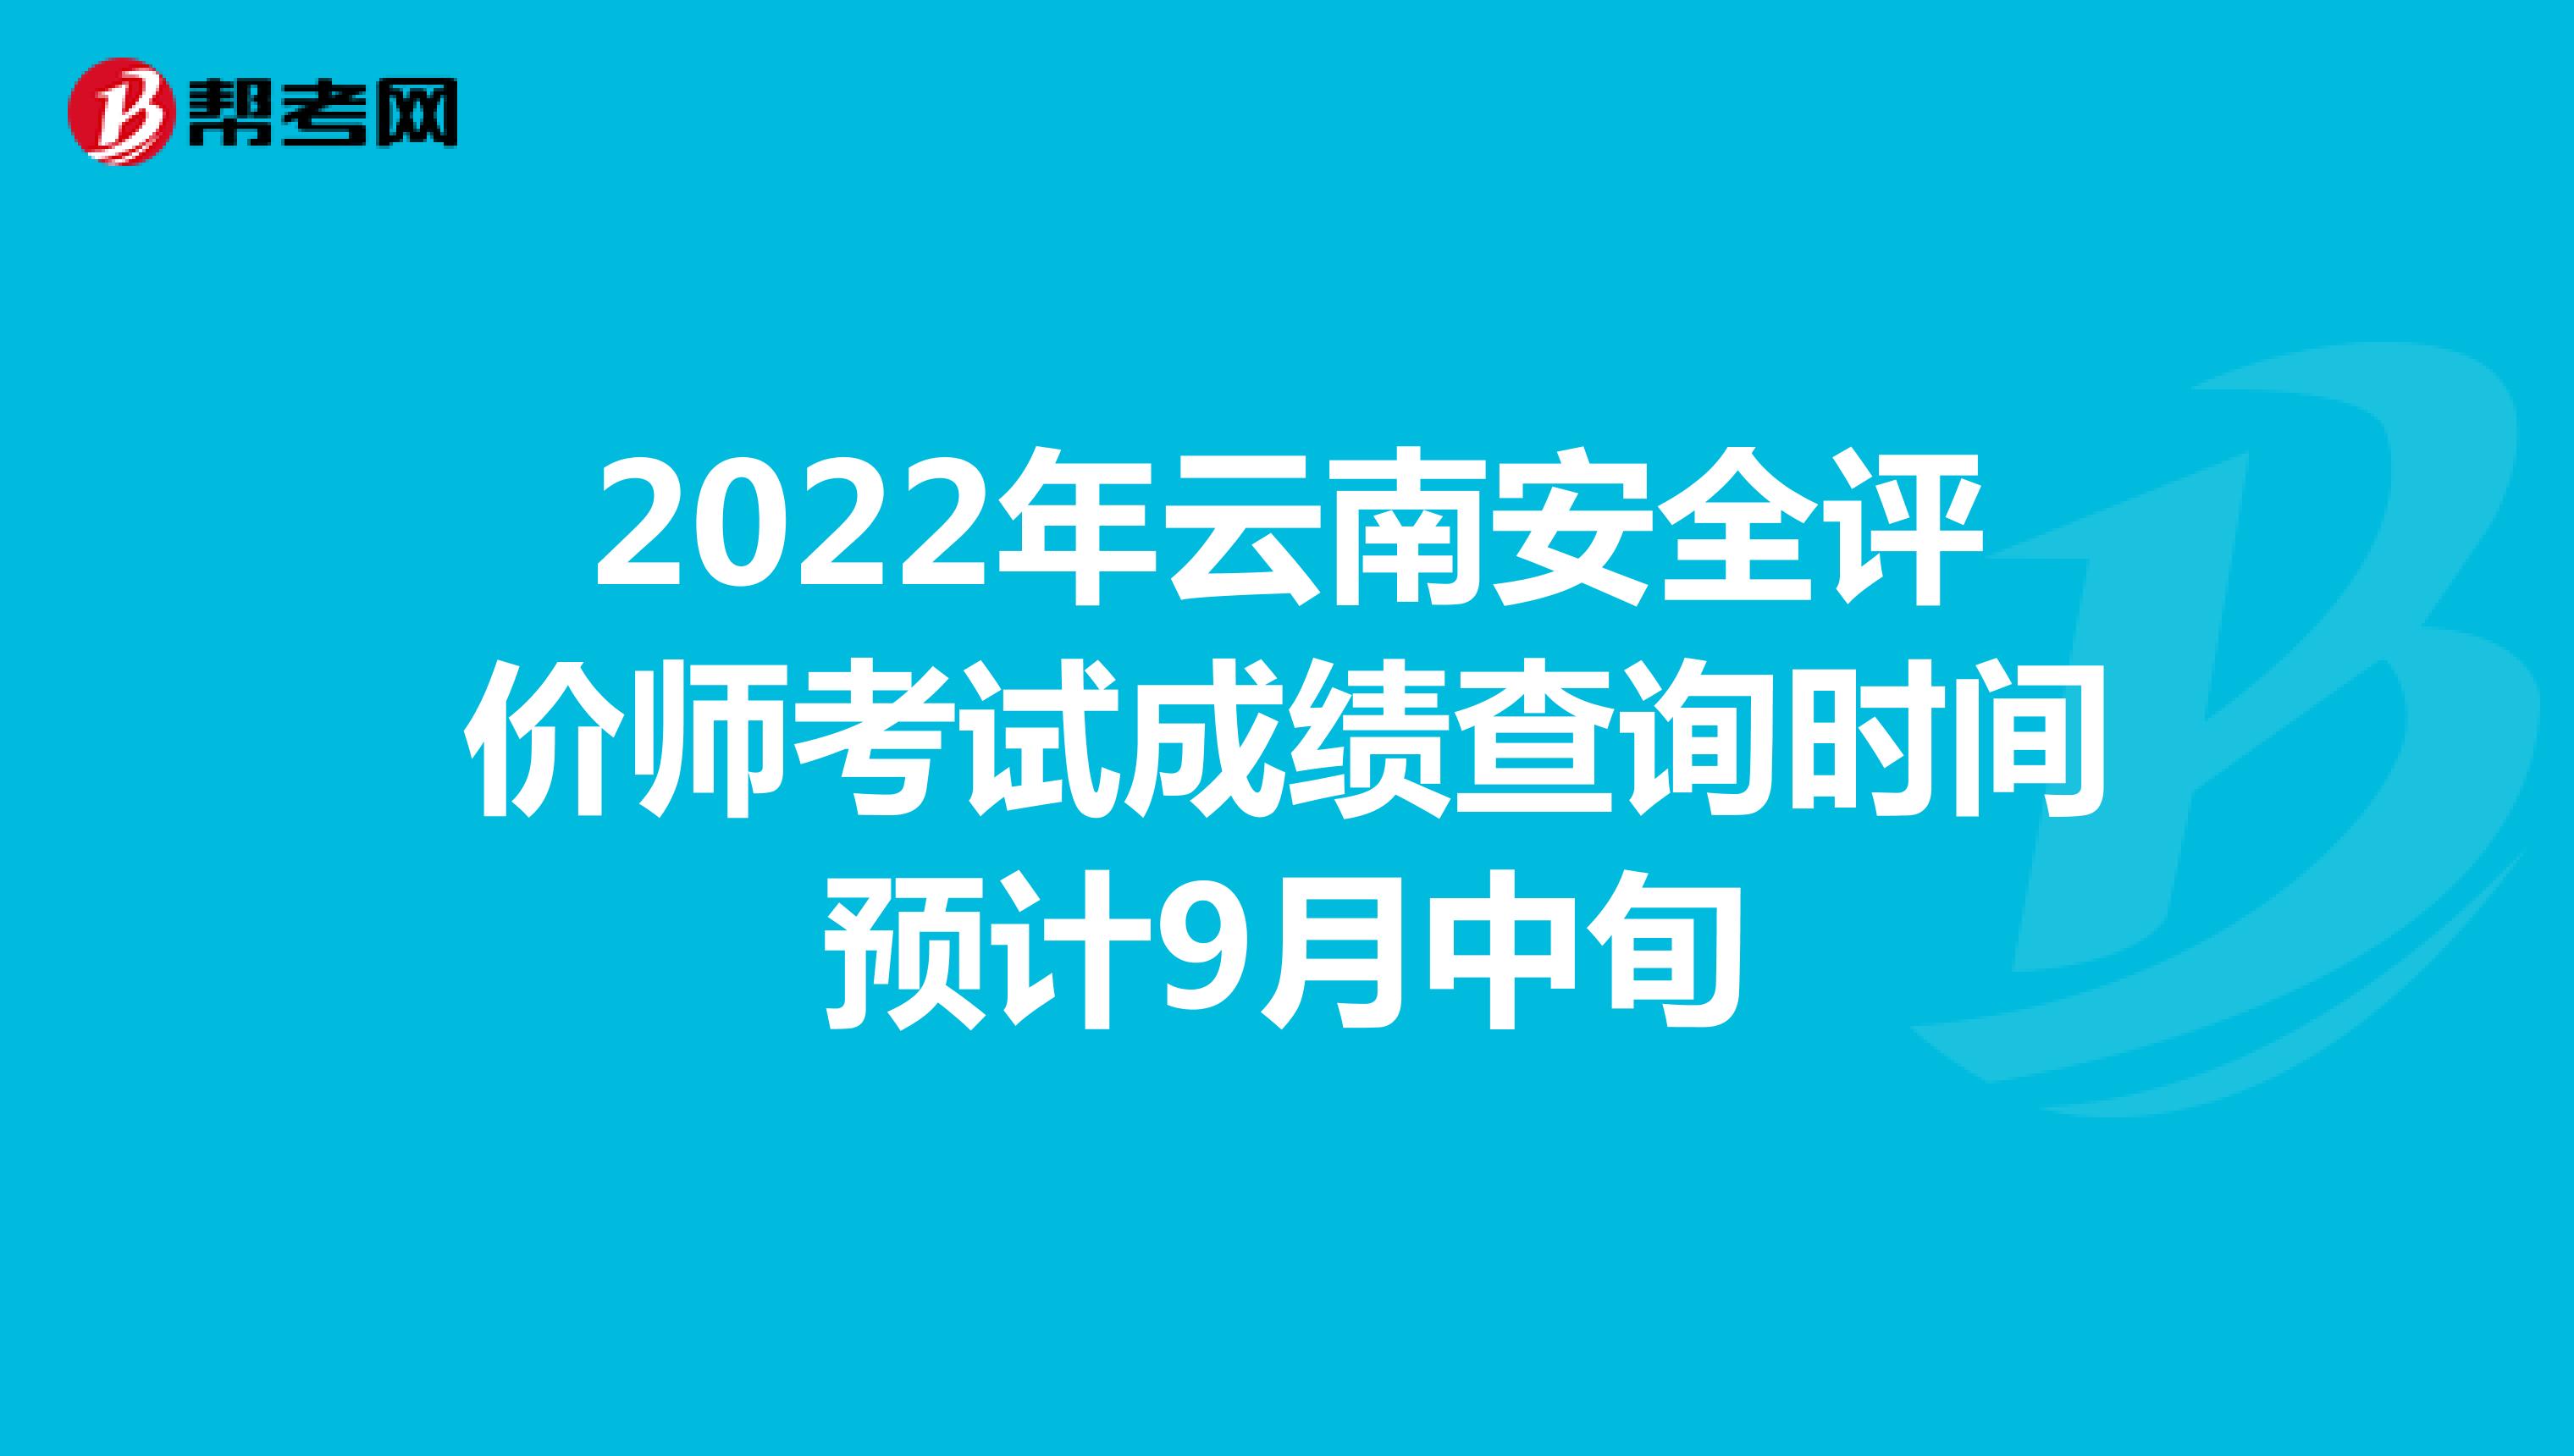 2022年云南安全评价师考试成绩查询时间预计9月中旬